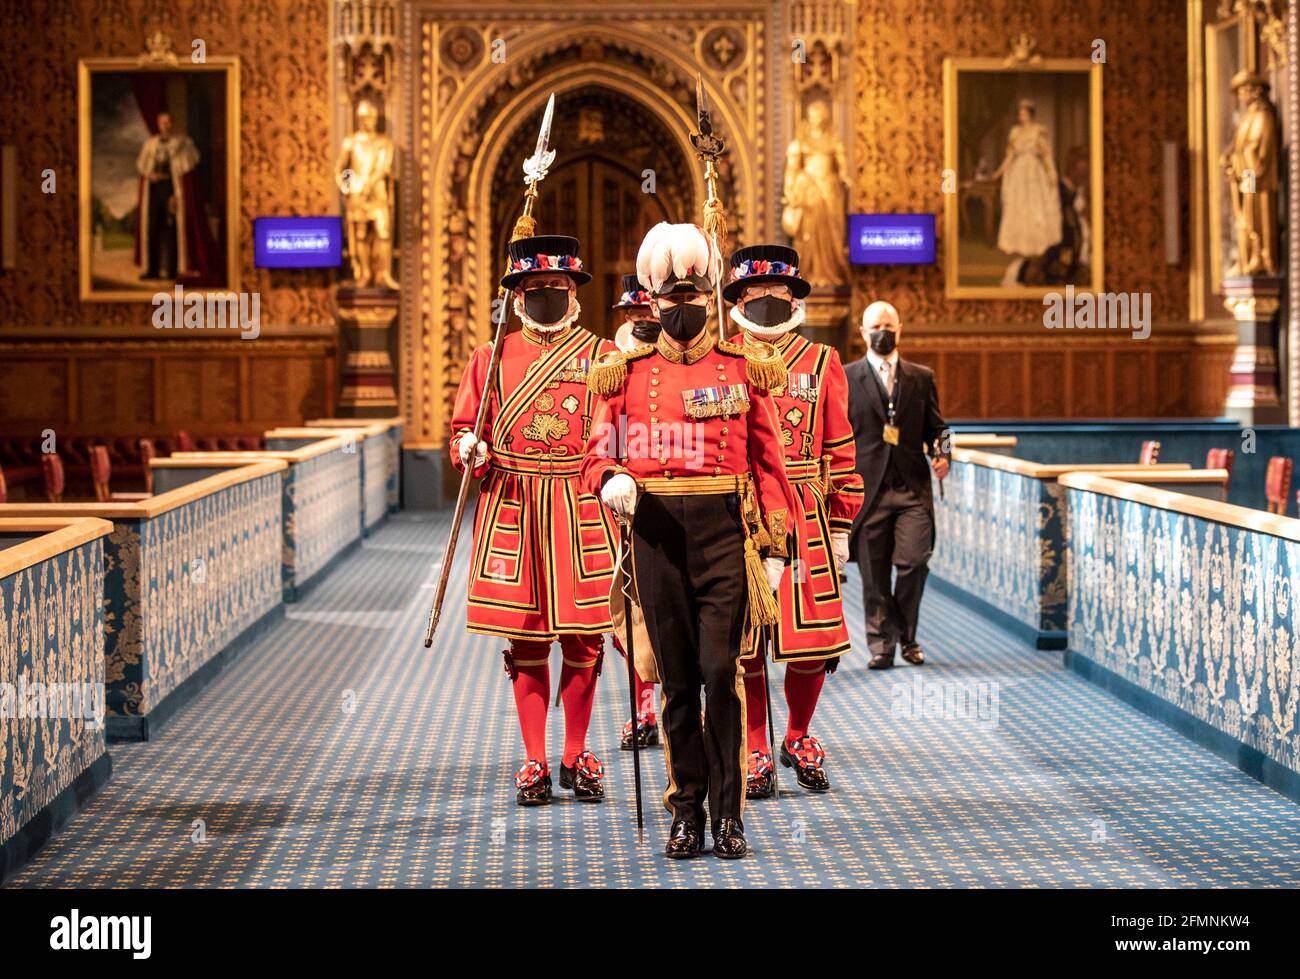 Les gardiens de Yeoman masqués défilent le long de la Galerie royale lors de la fouille cérémonielle du Palais de Westminster à Londres, avant l'ouverture d'État du Parlement par la reine Elizabeth II, à la Chambre des Lords. Date de la photo: Mardi 11 mai 2021. Banque D'Images